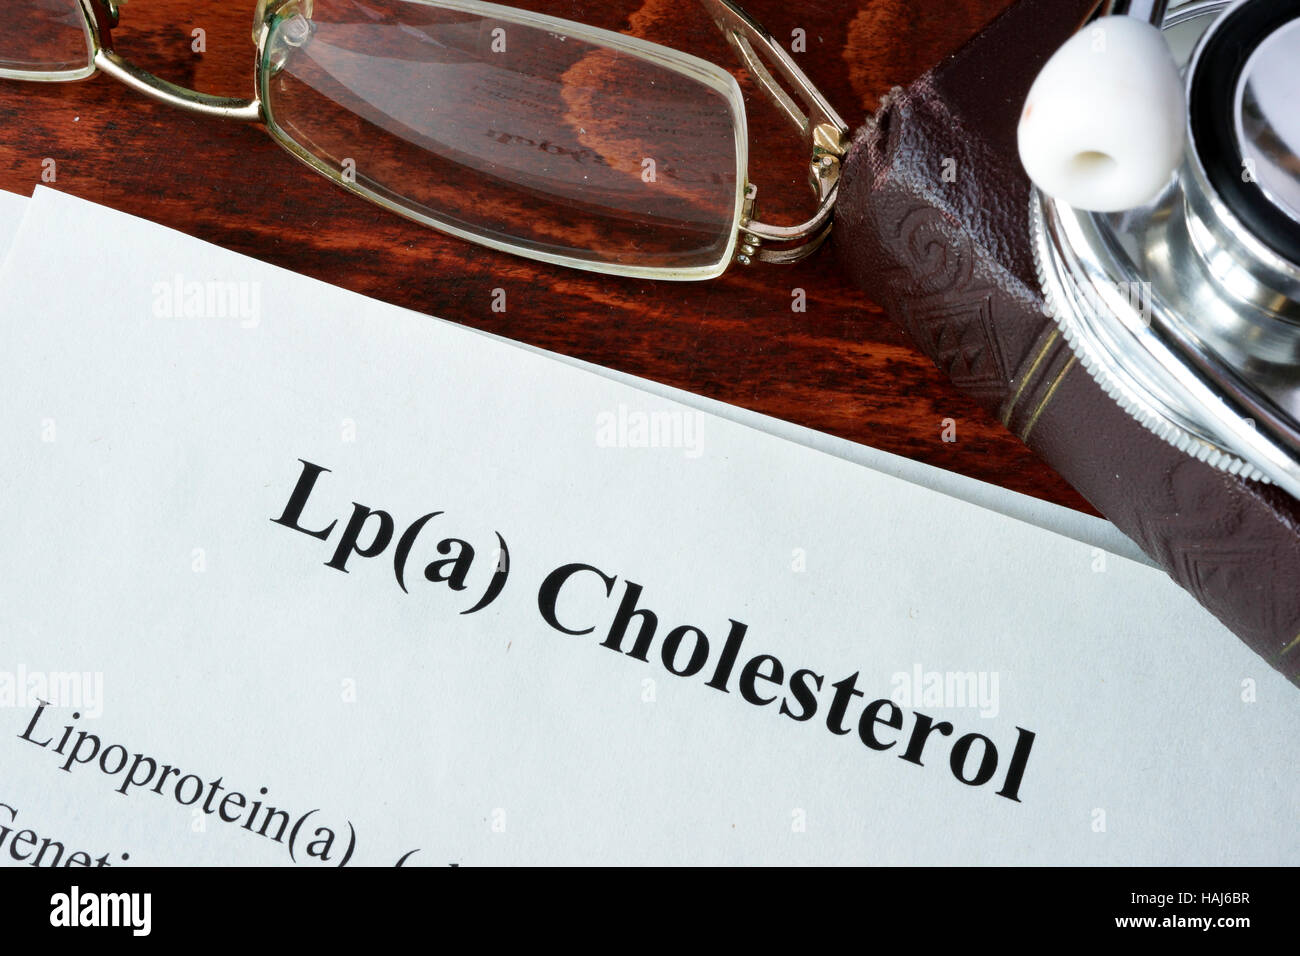 Papiere mit Worten Lp(a) Cholesterin auf einem Tisch. Stockfoto